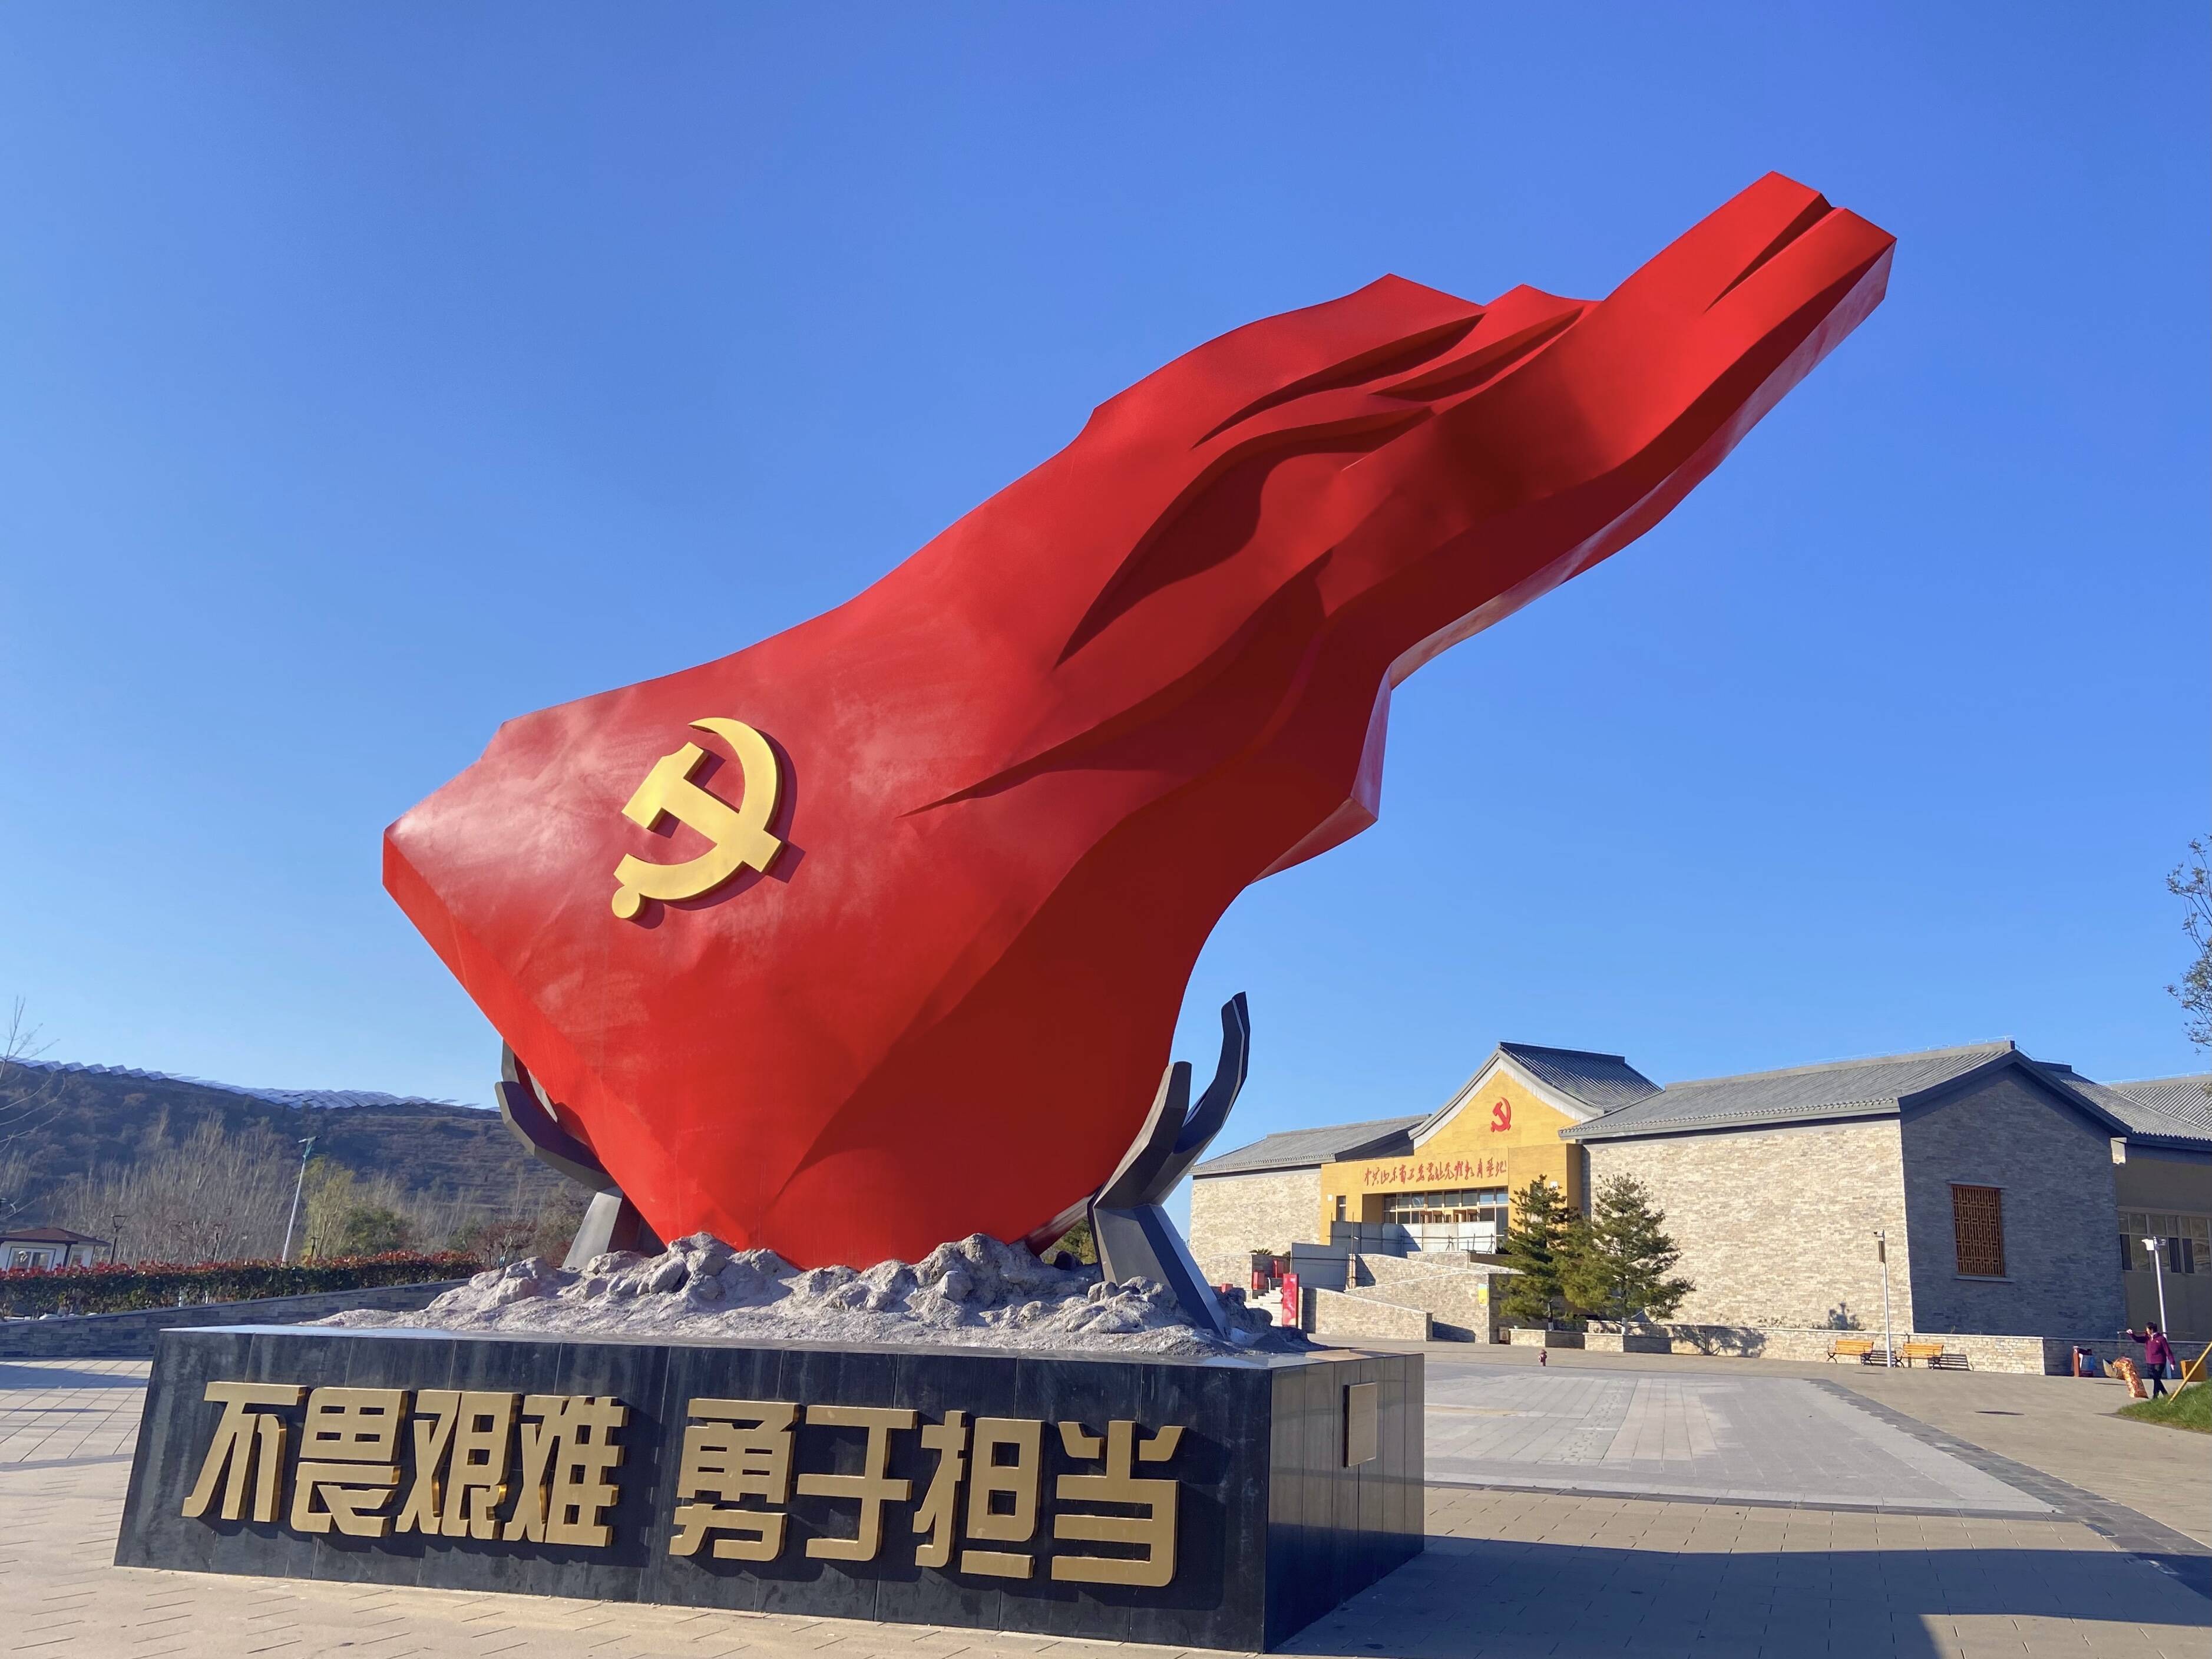 济南红色革命教育基地图片